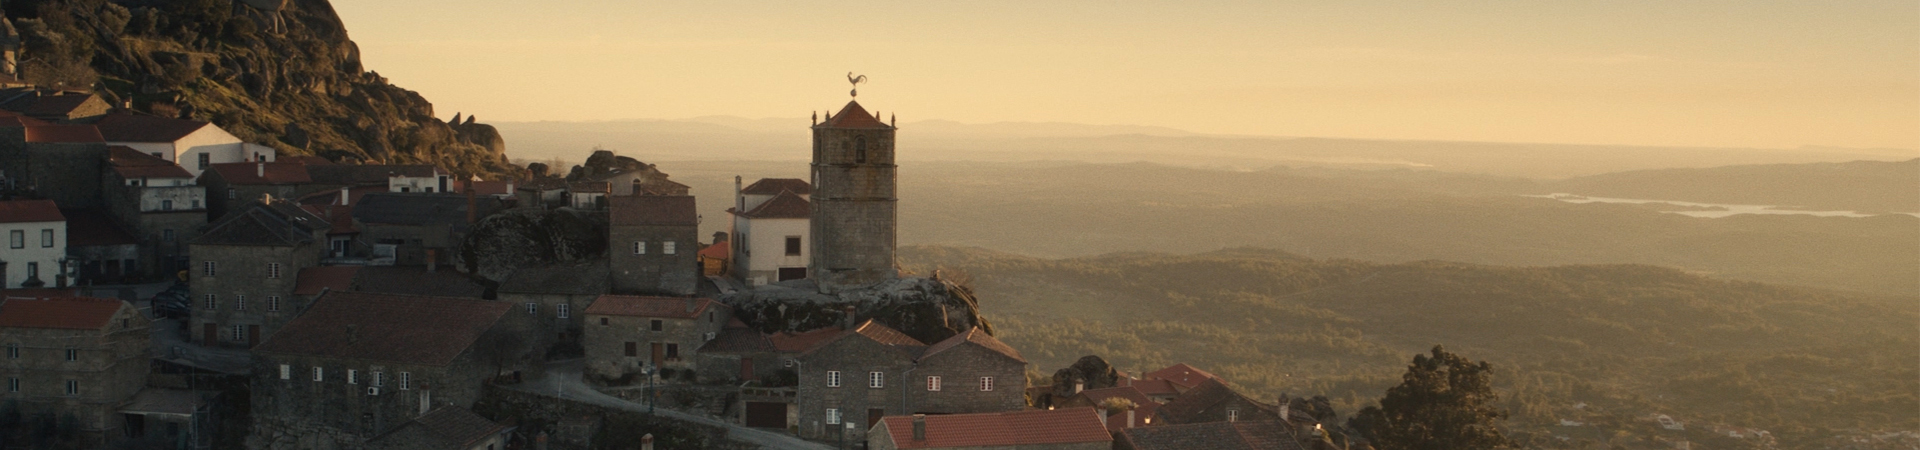 Aldeias Históricas de Portugal vencem Melhor Filme de Turismo do Mundo